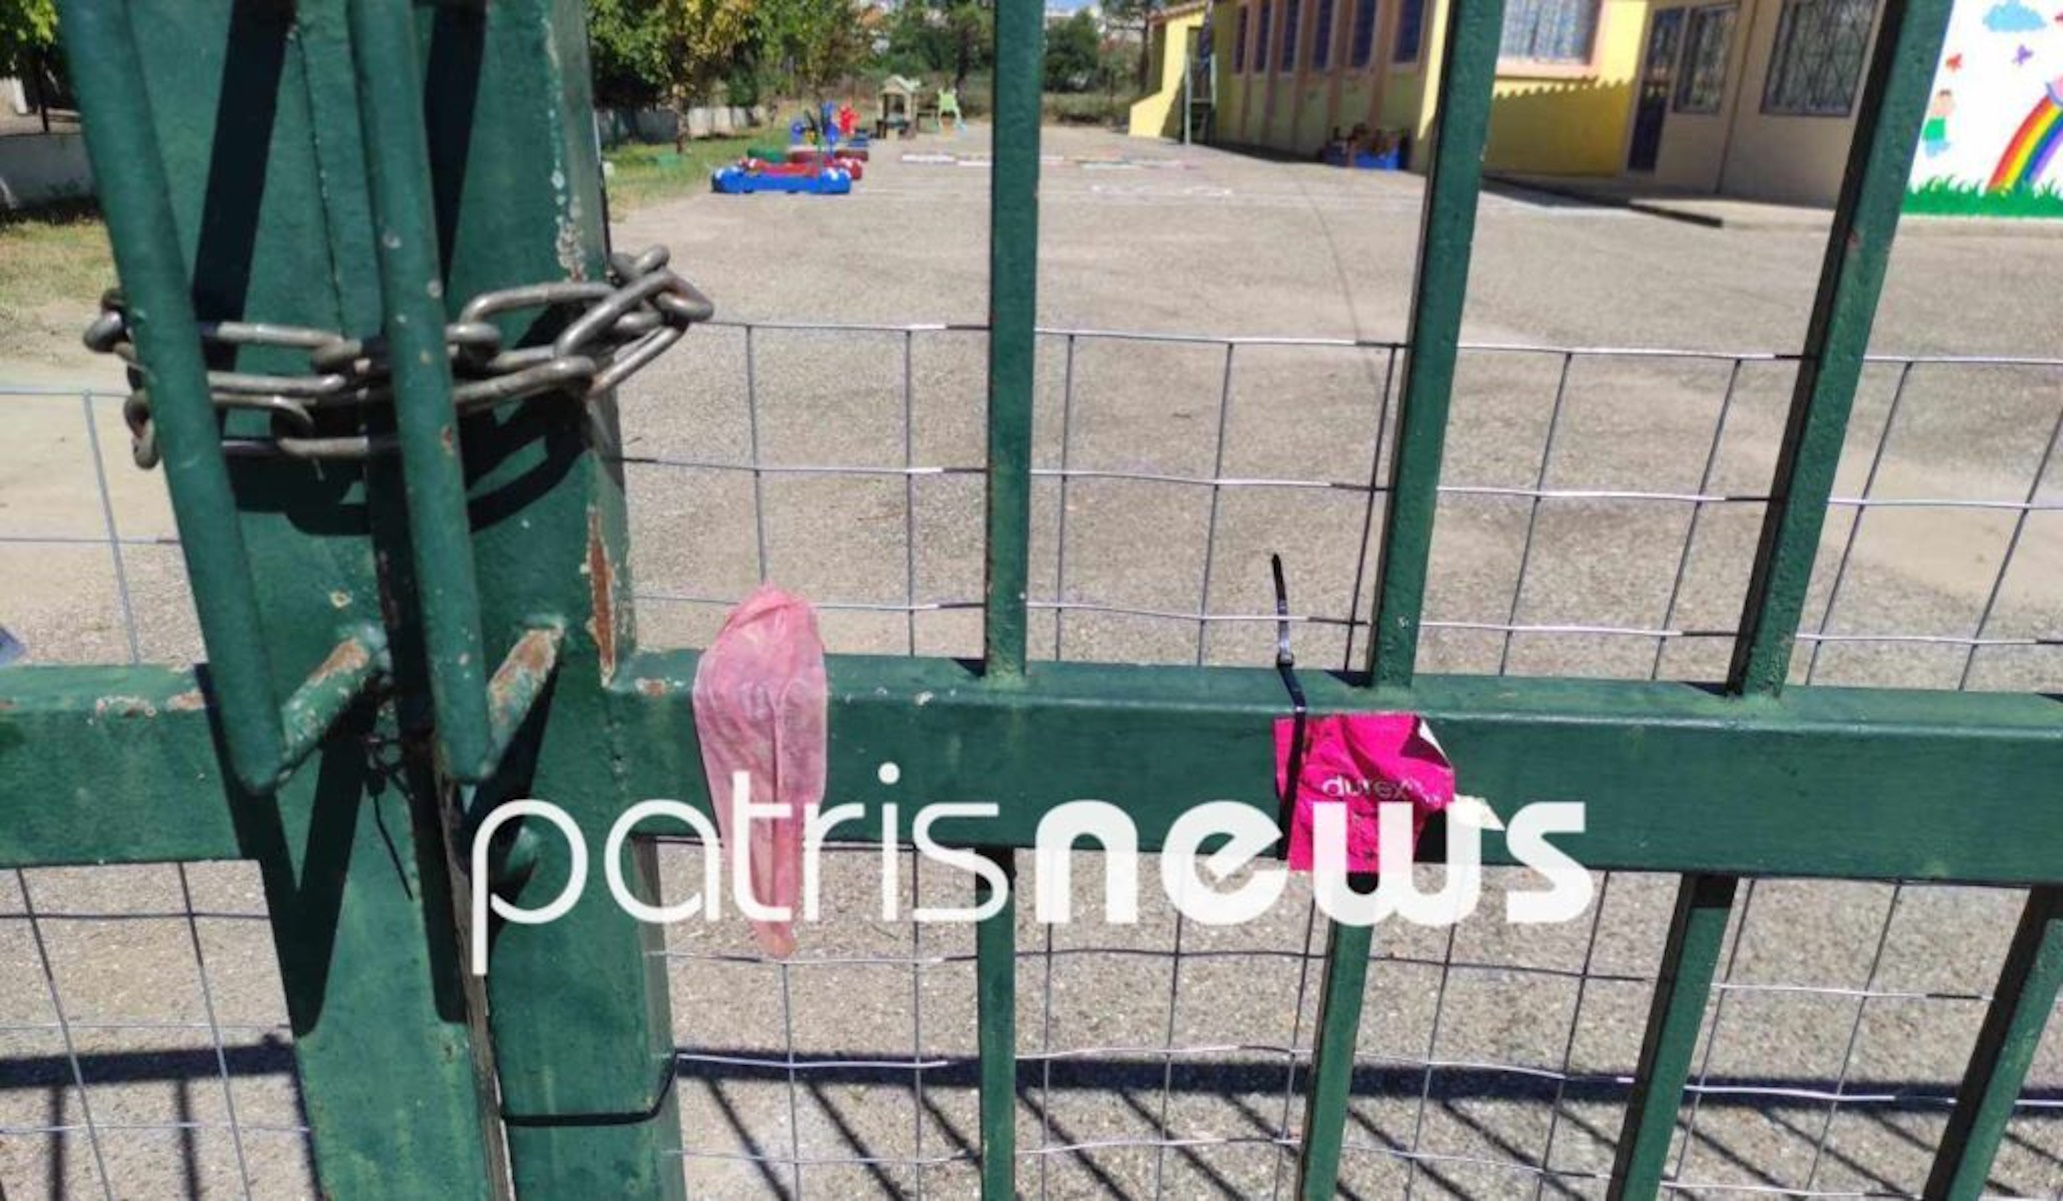 Ηλεία: Κρέμασαν χρησιμοποιημένα προφυλακτικά στην είσοδο νηπιαγωγείου στον Πύργο – Εικόνες ντροπής